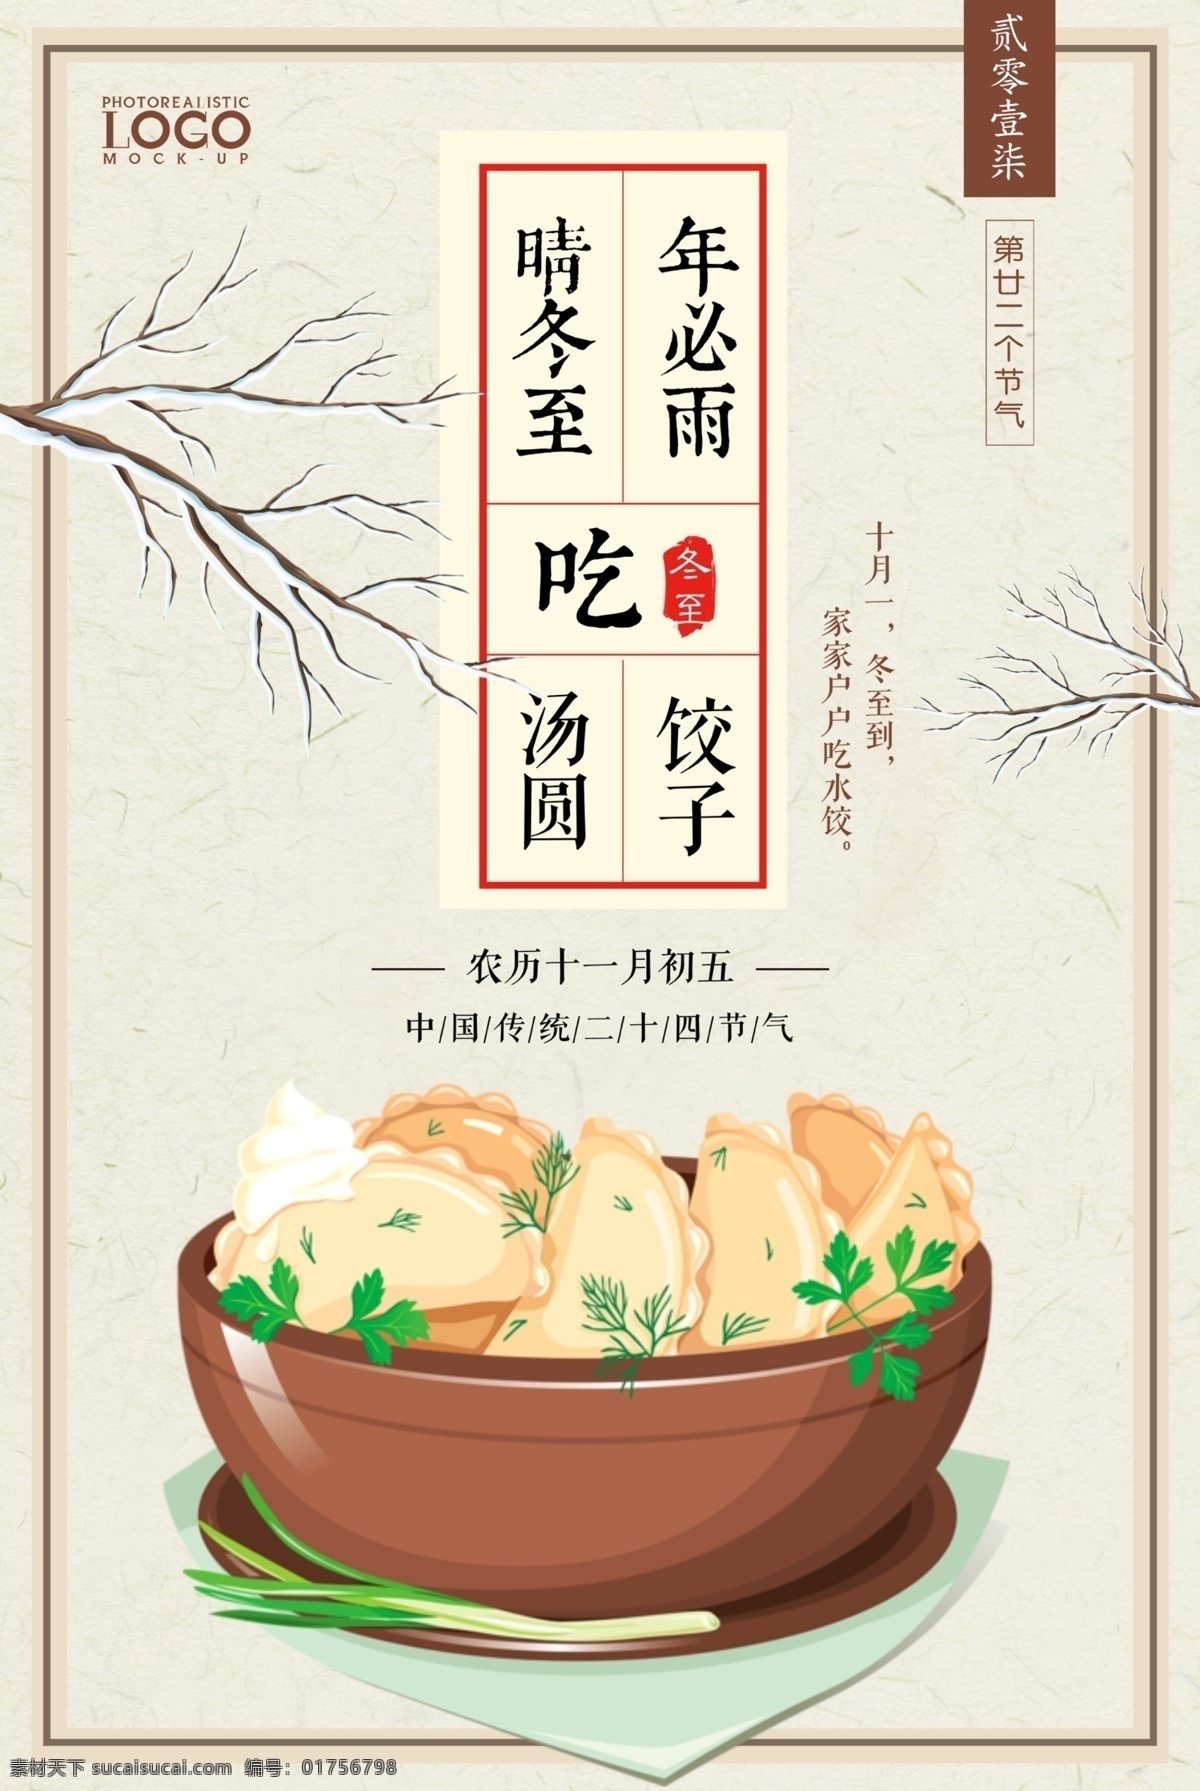 冬至 吃 饺子 美食 节日 汤圆 海报 美食海报 节日海报 中国 风